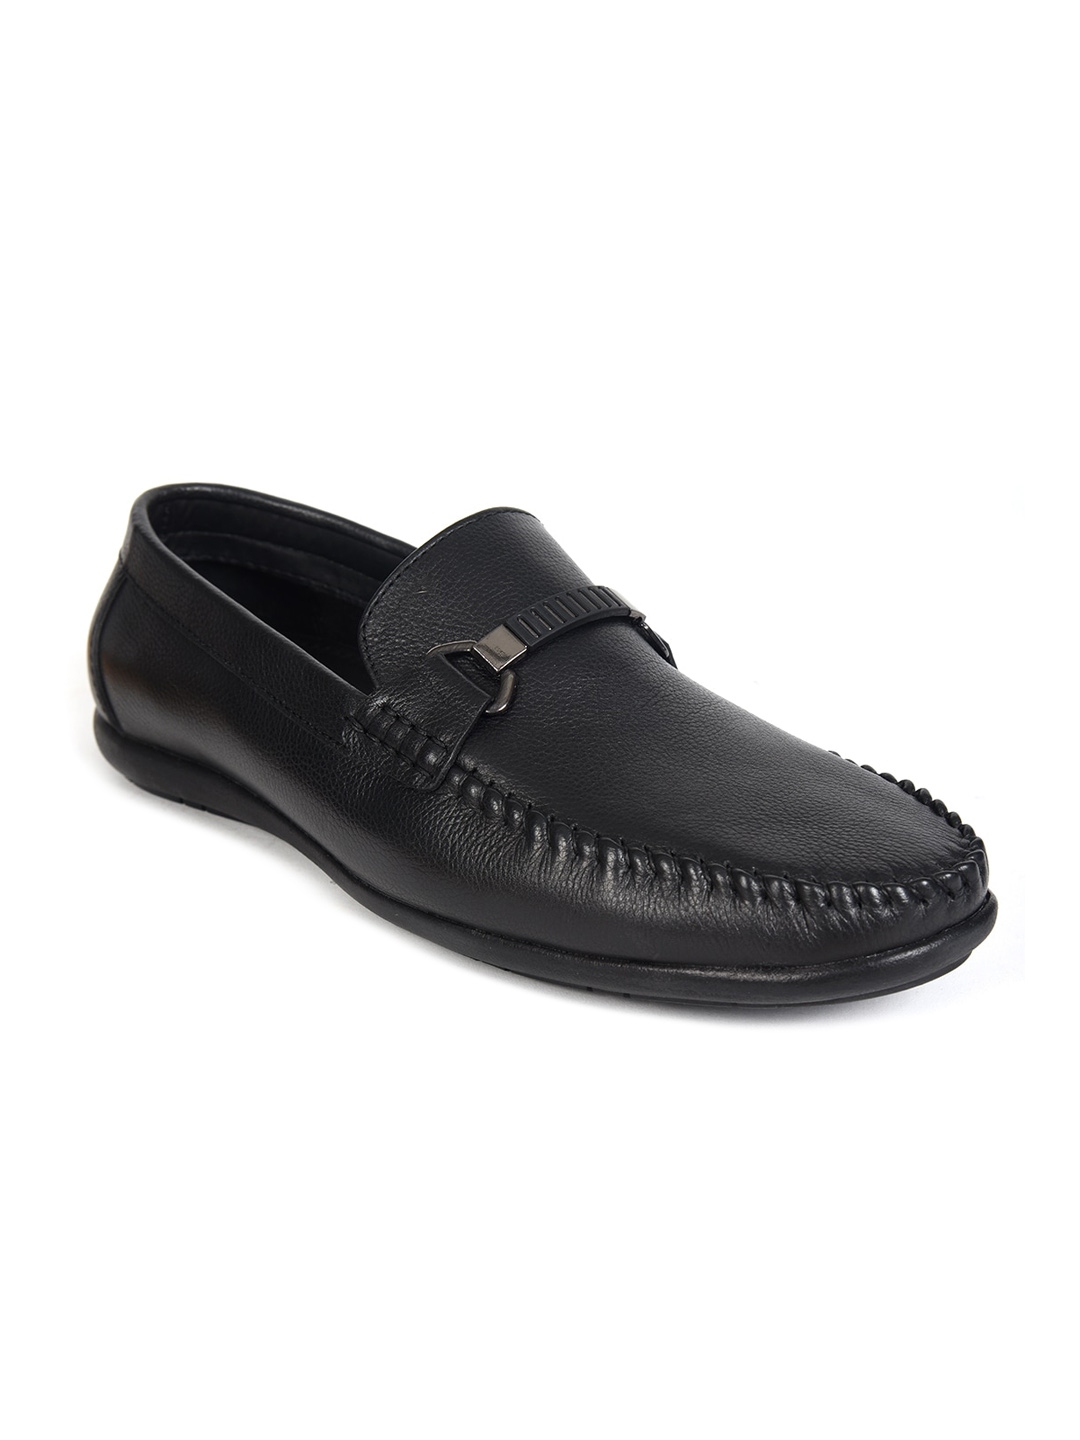 Buy IMPAKTO Men Black Solid Leather Formal Slip Ons - Formal Shoes for ...